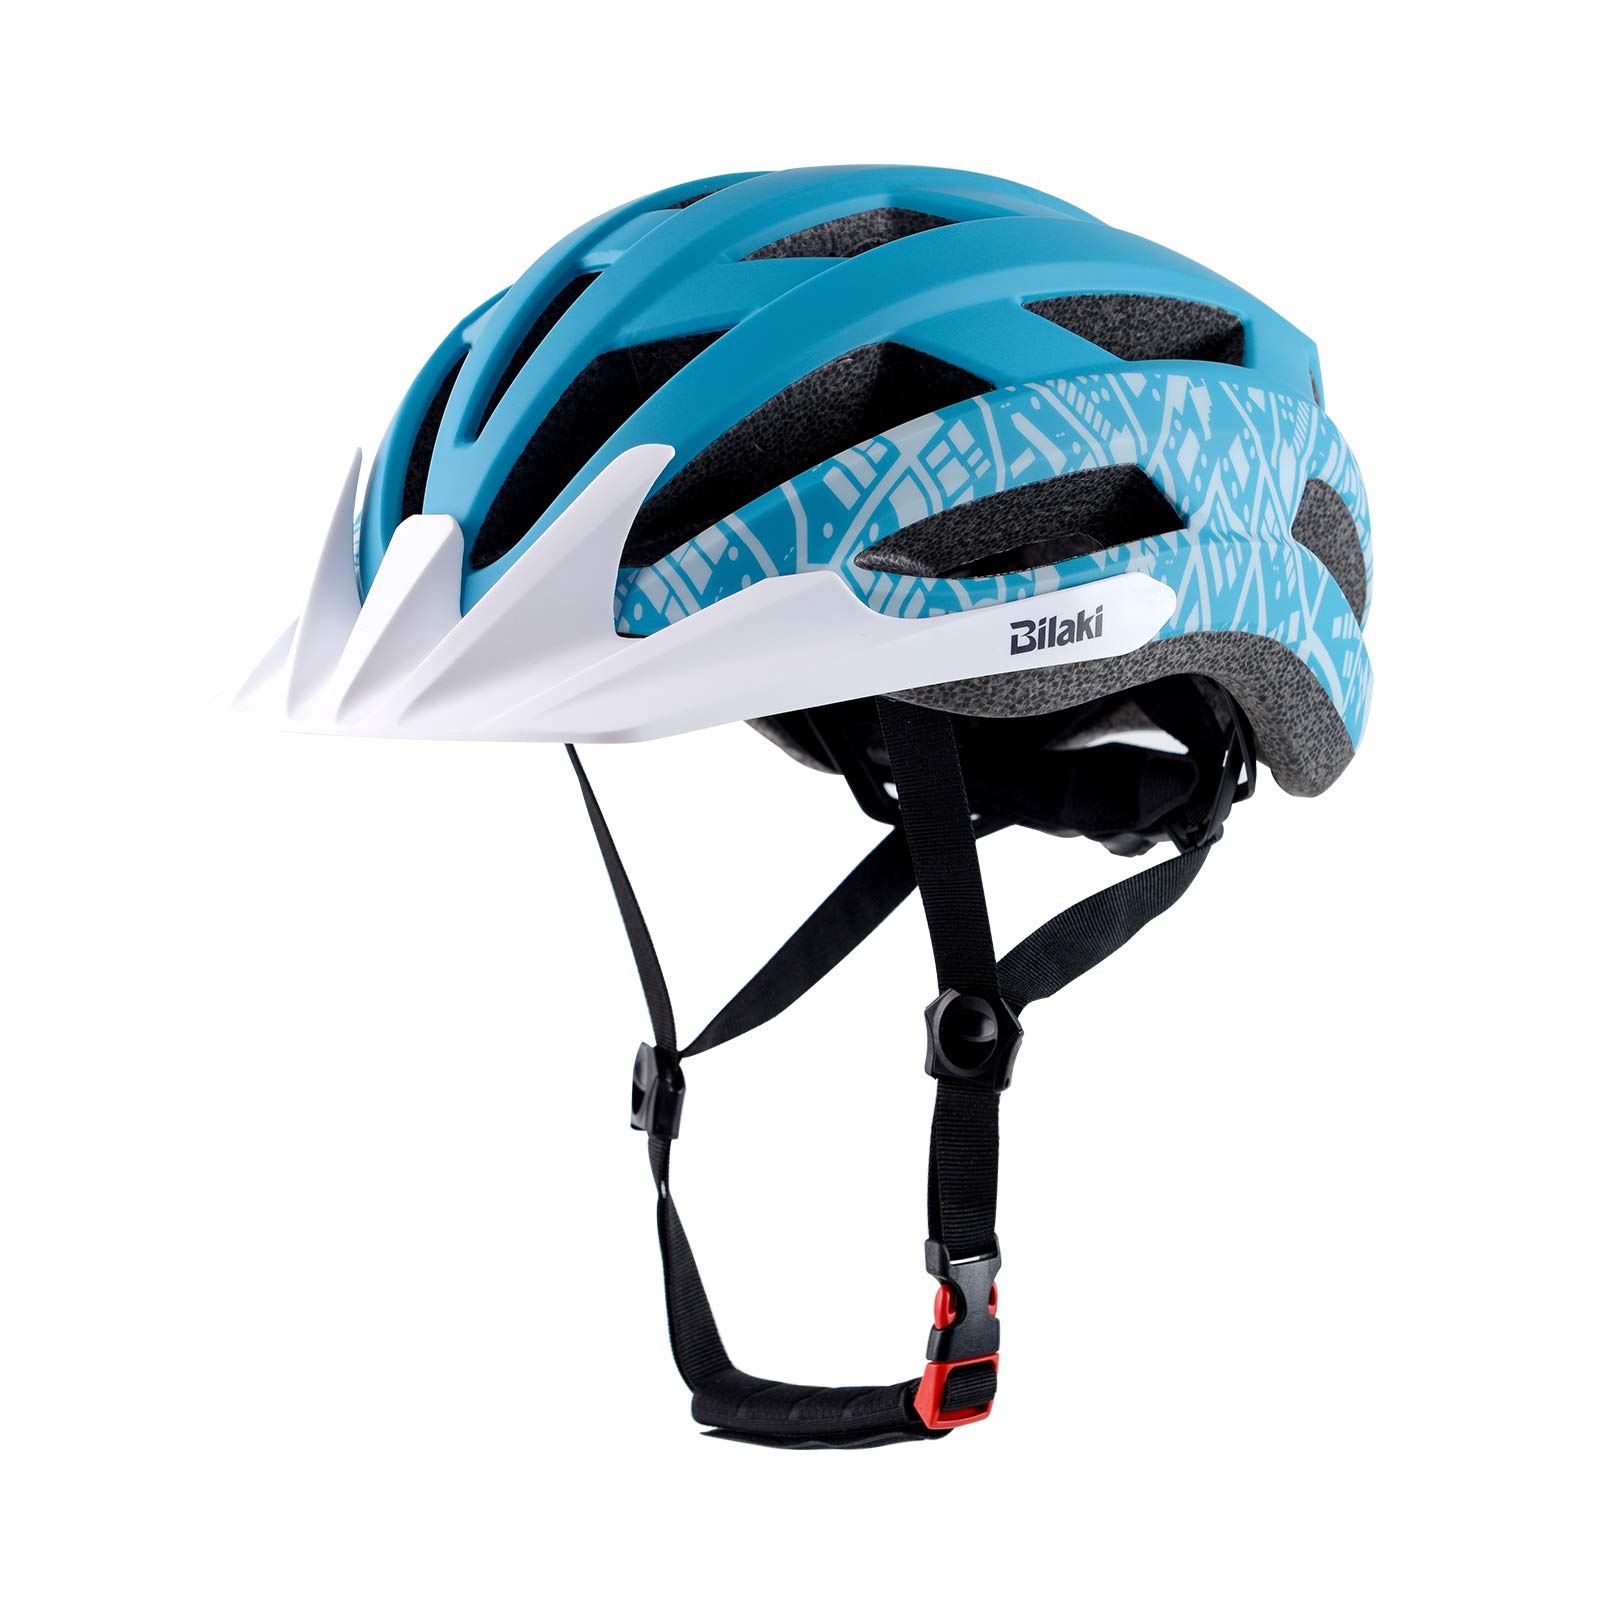 Adult Youth Bike Helmet, Road Mountain Bicycle Helmet for Women